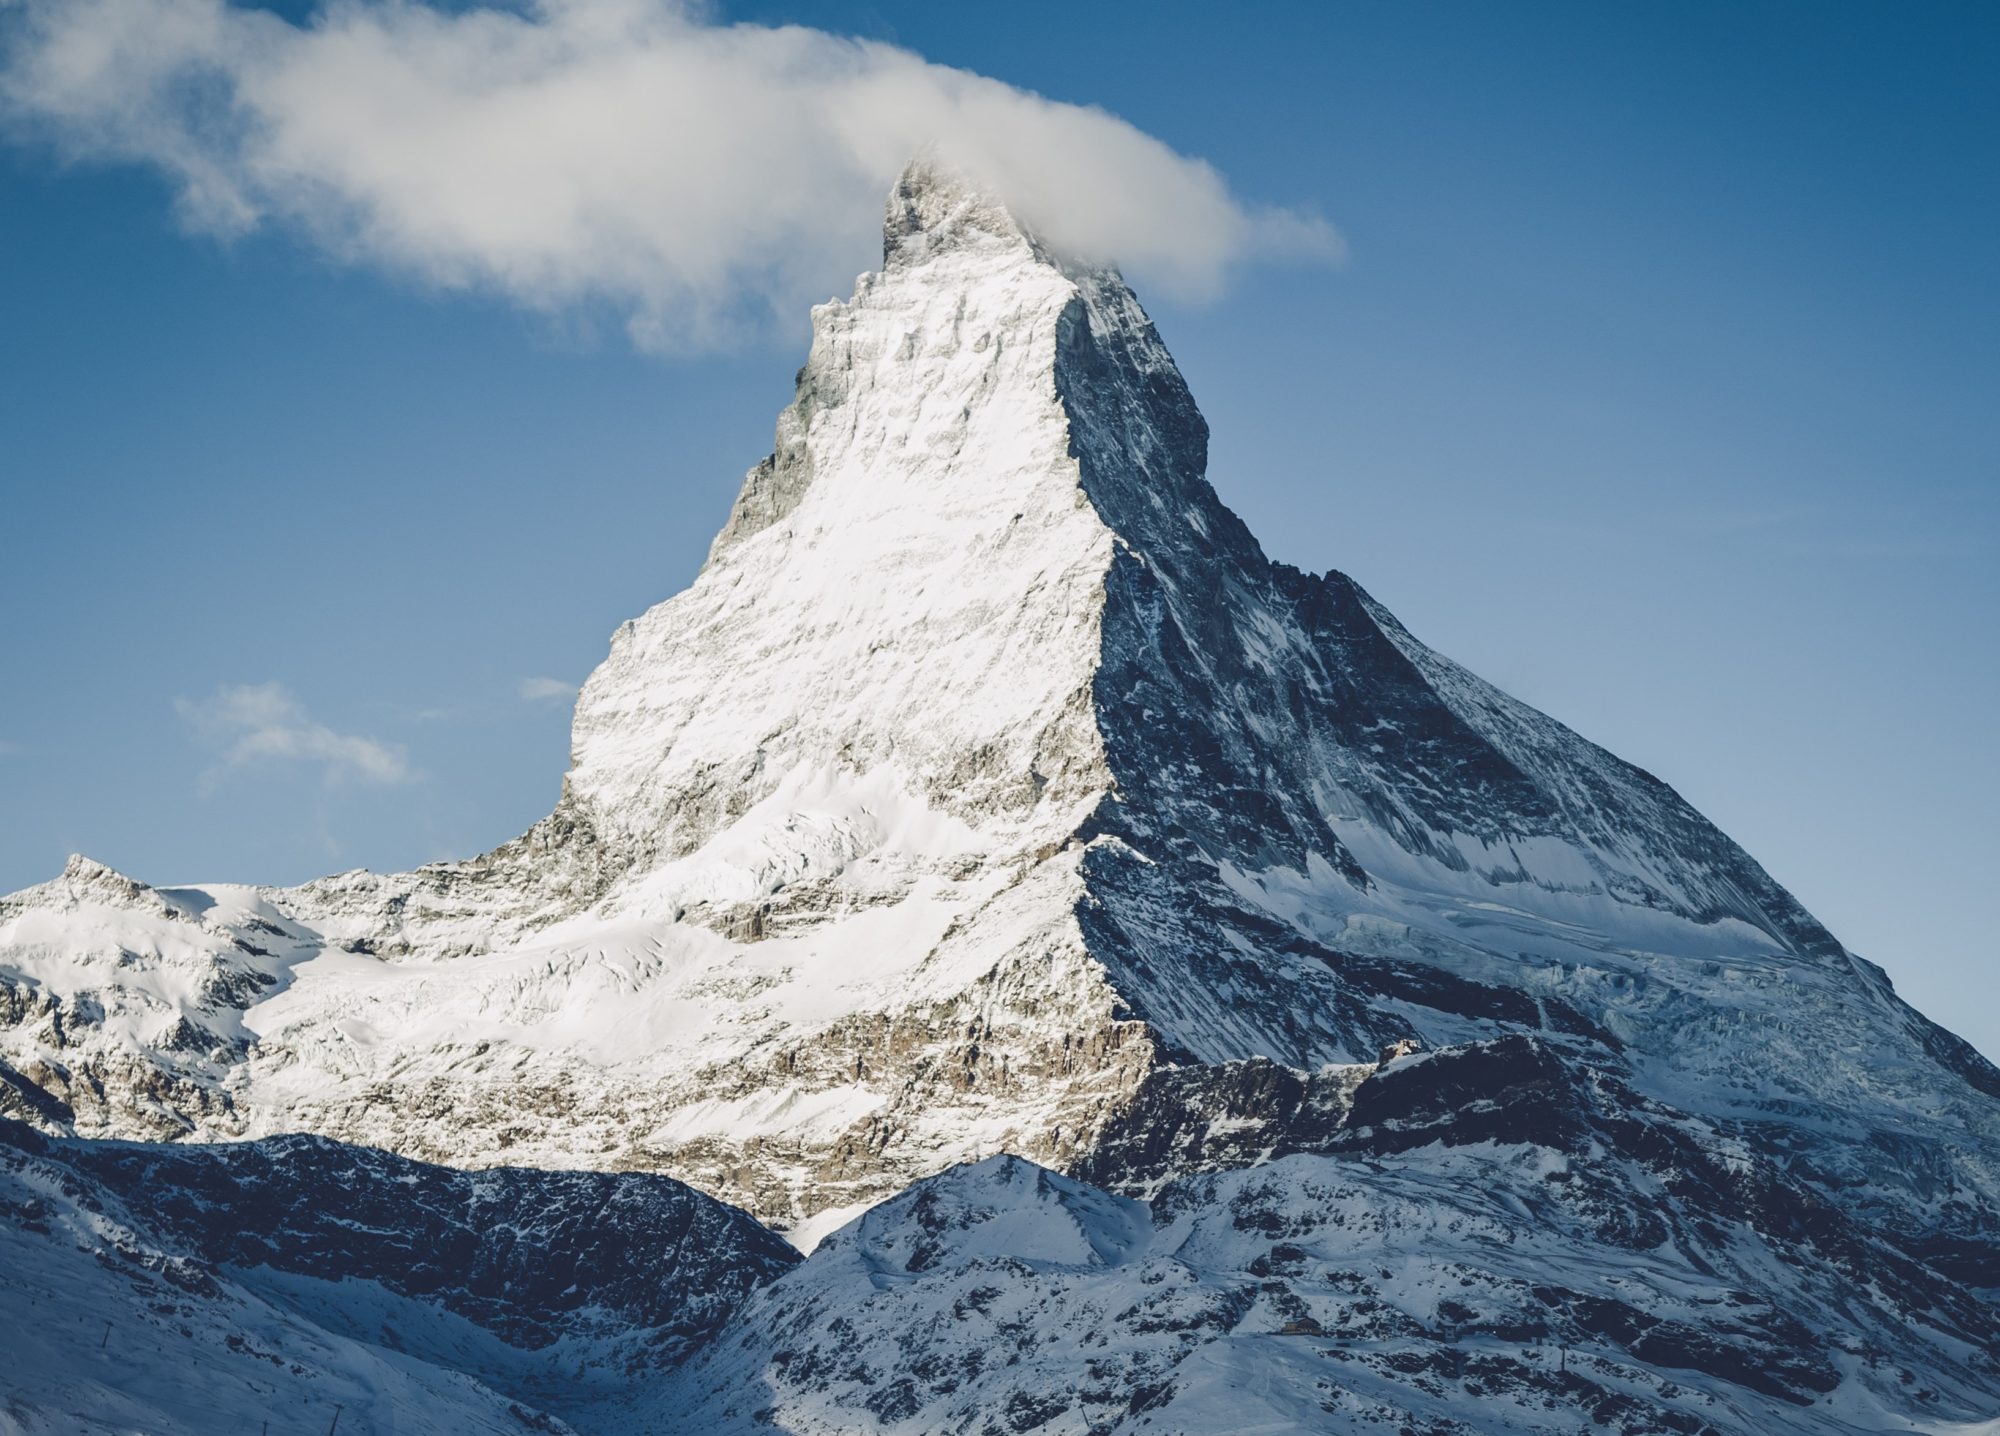 Matterhorn with snow on it